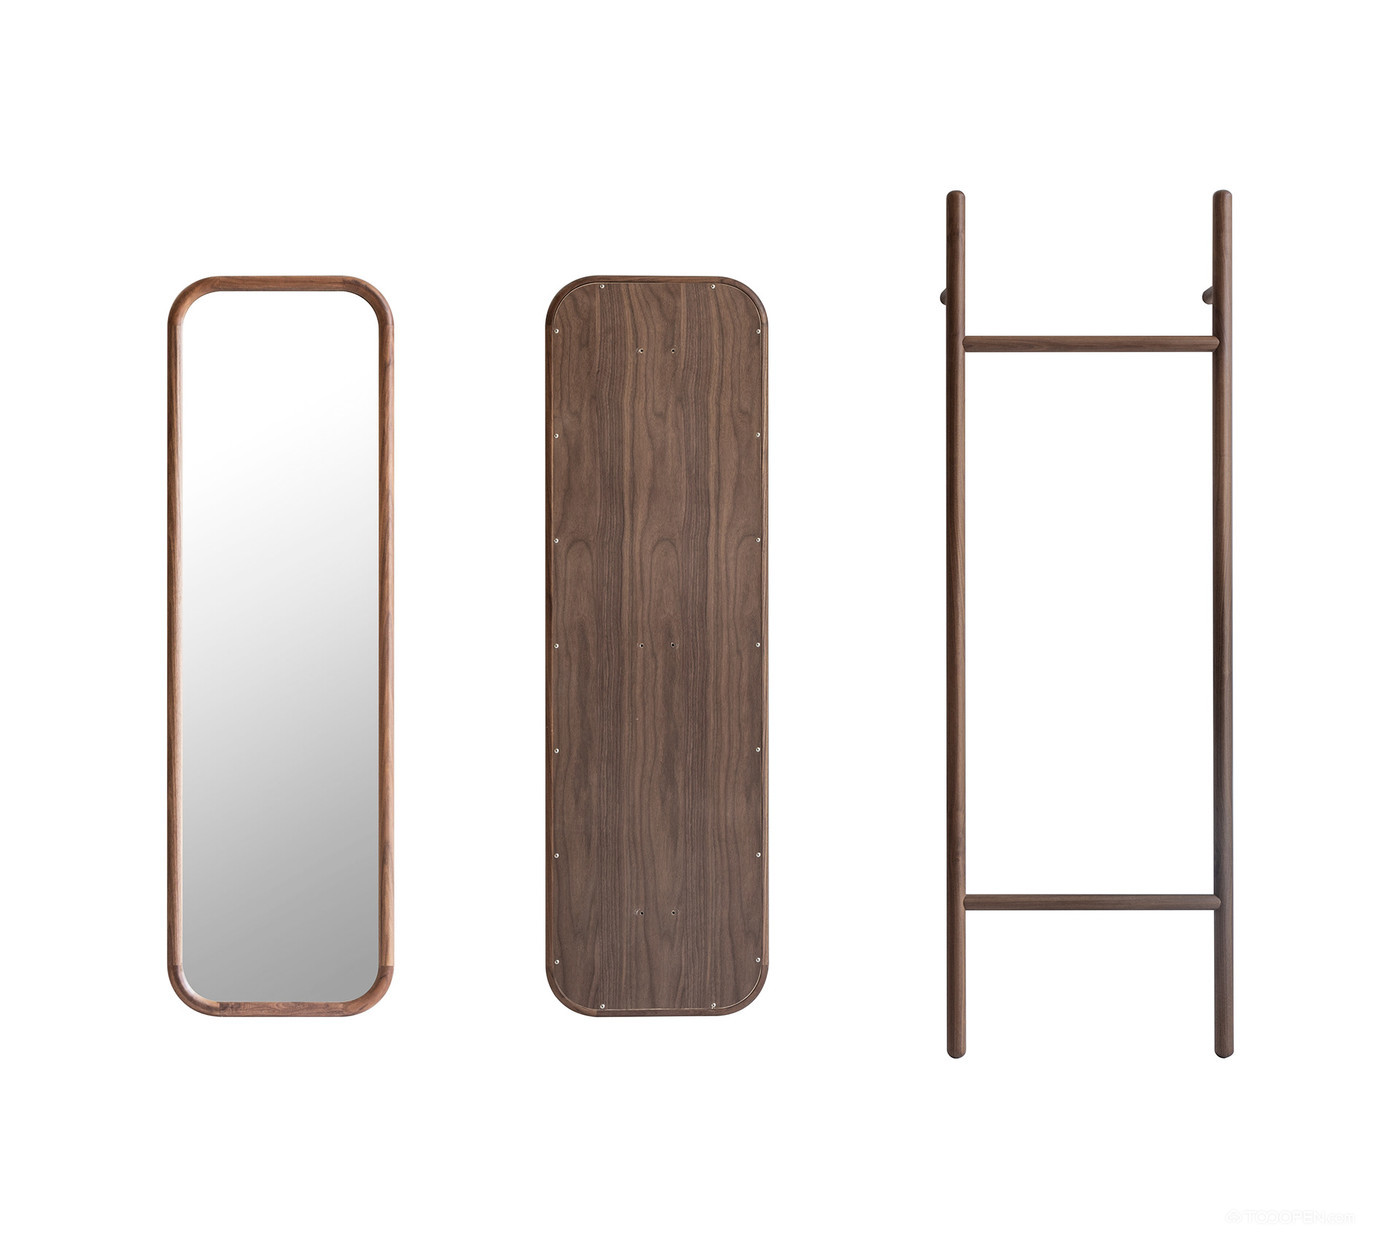 衣架和镜子于一体的多功能家具产品设计欣赏-02